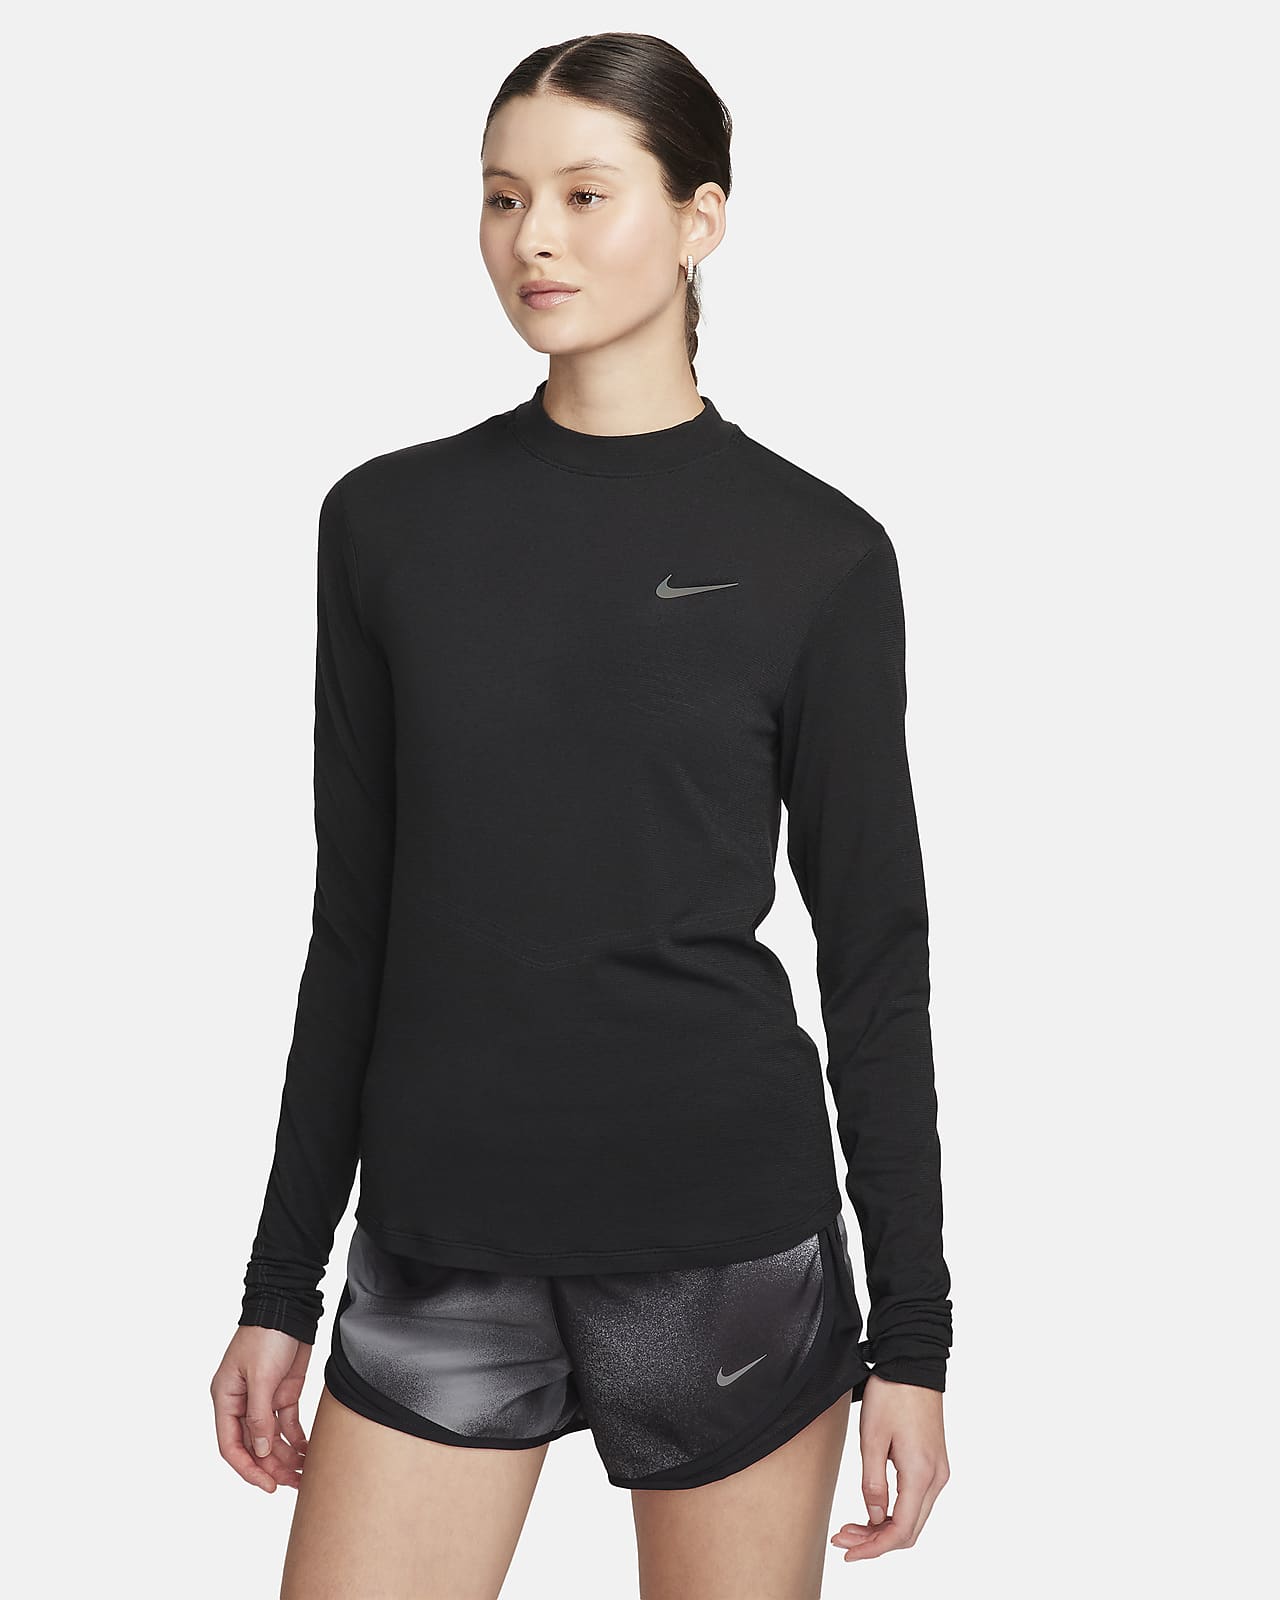 Maglia da running a manica lunga con collo a lupetto Dri-FIT Nike Swift – Donna